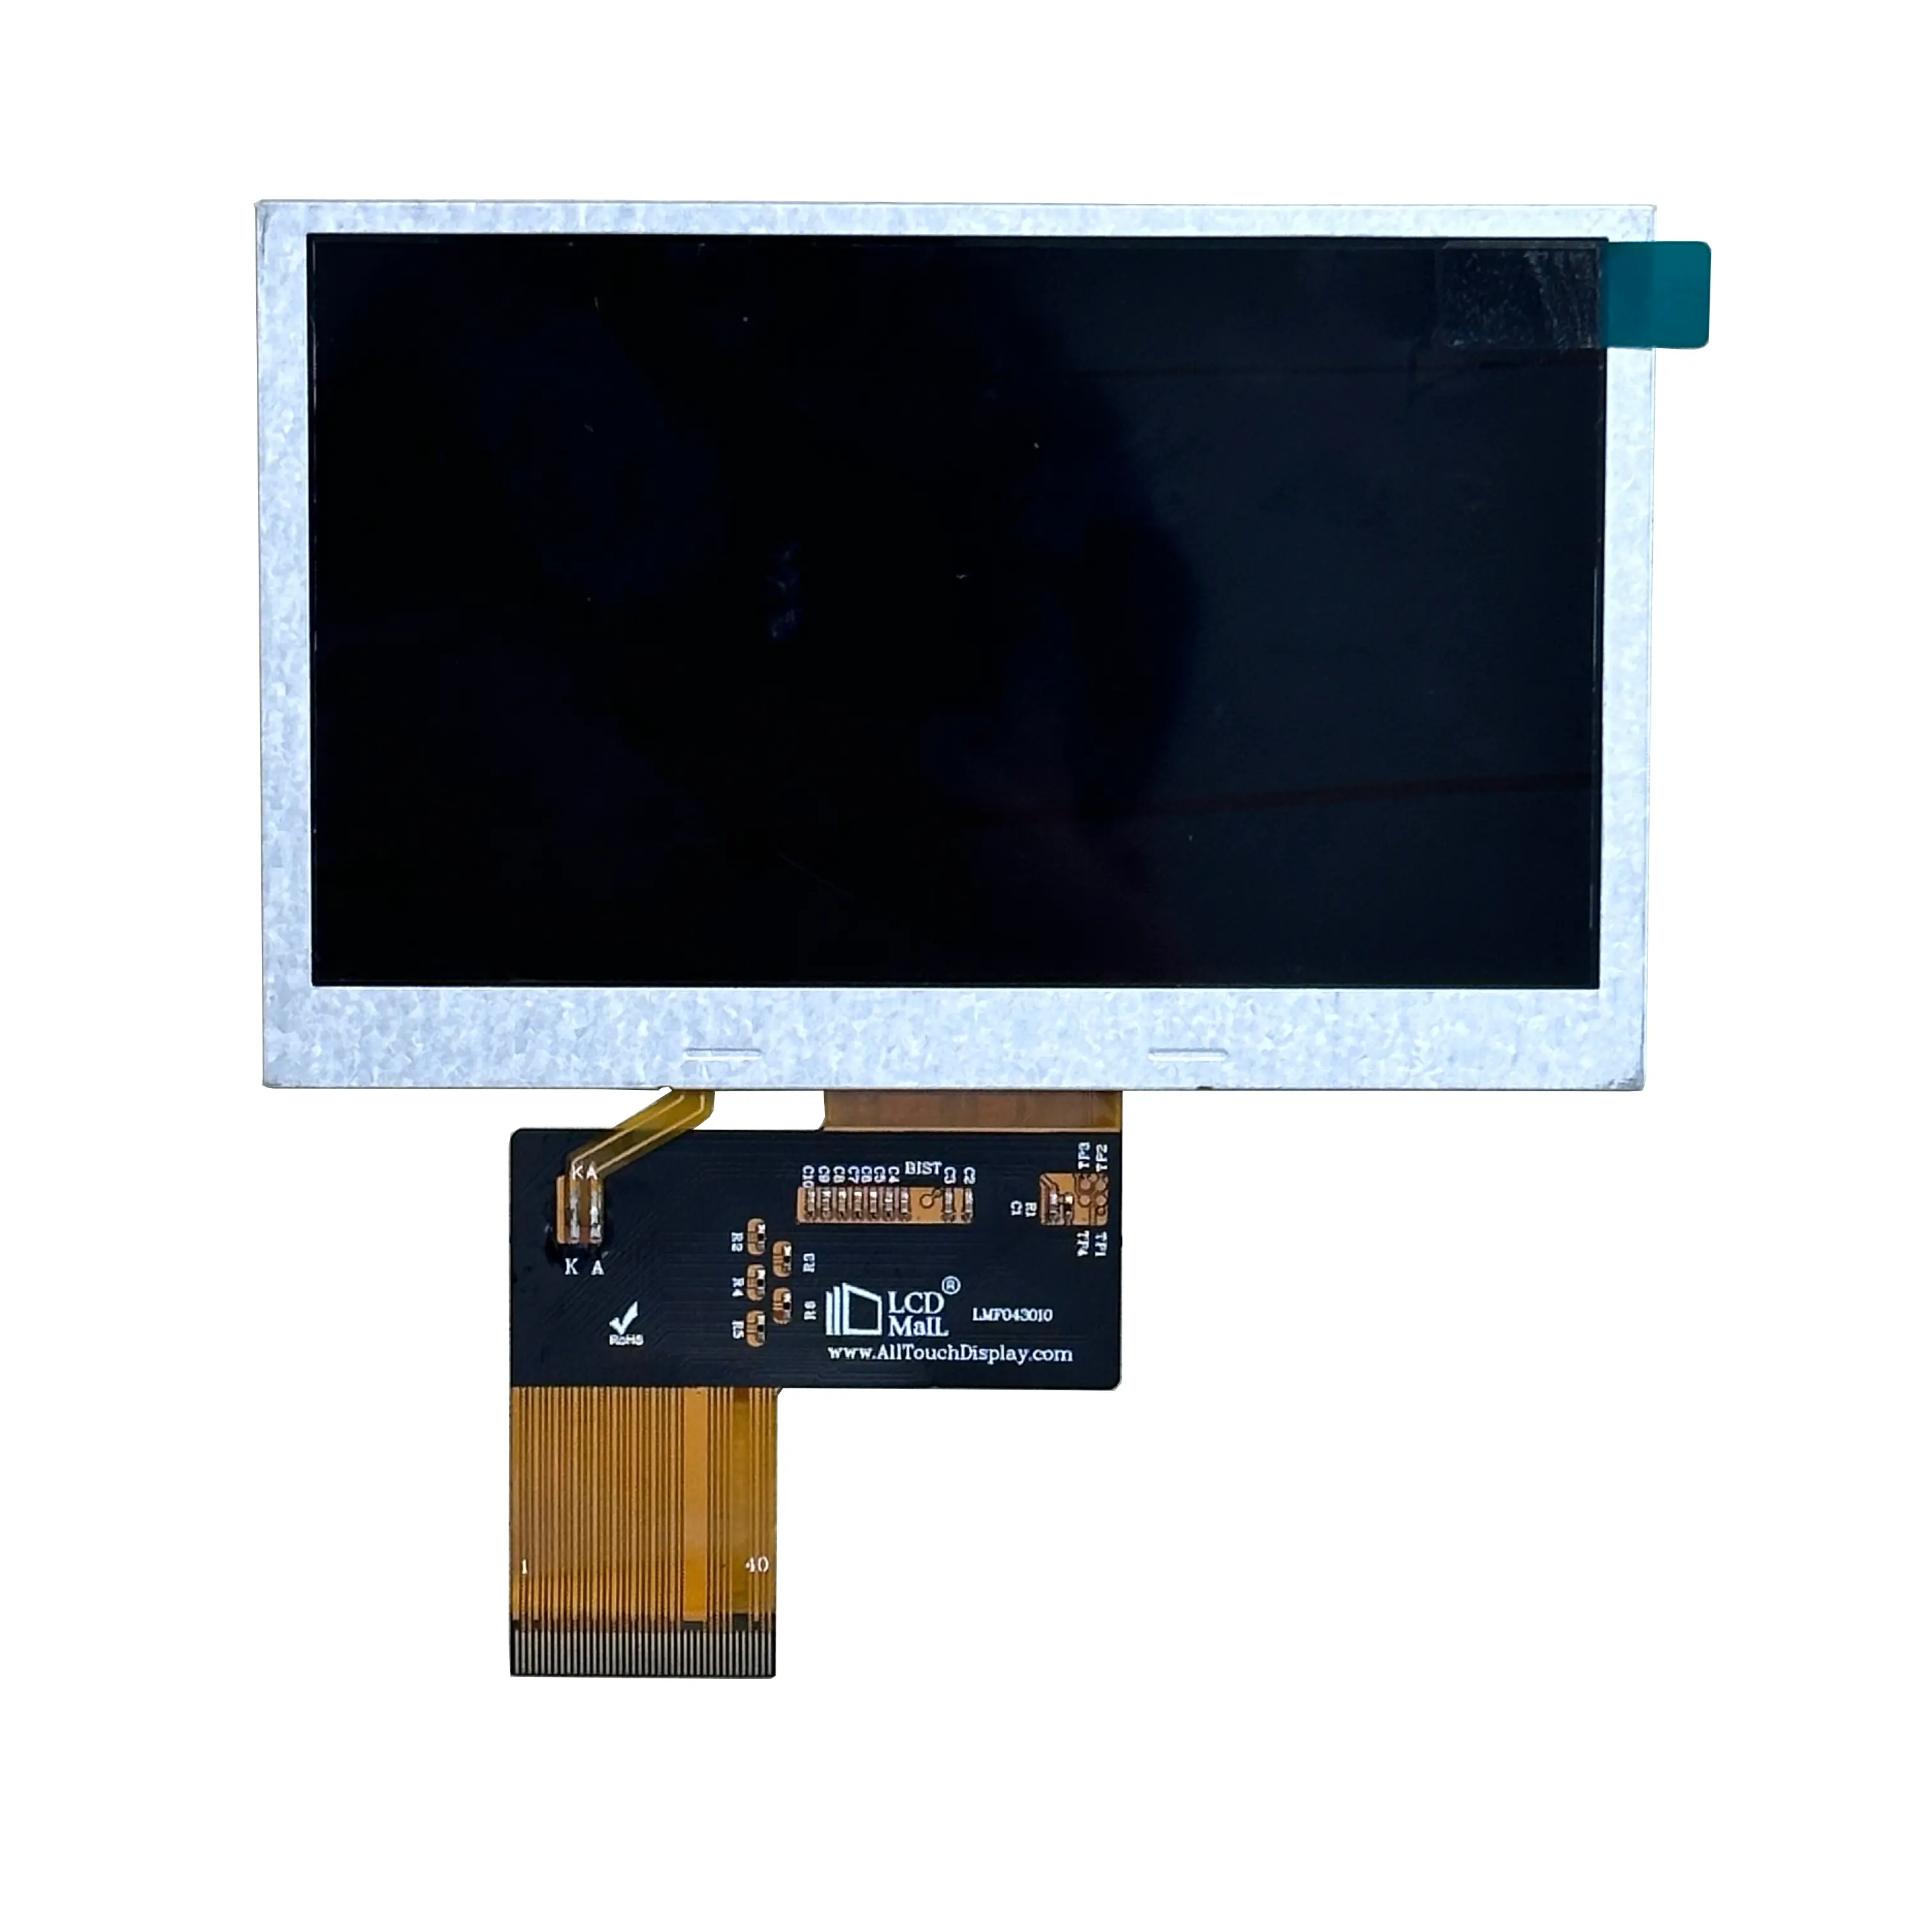 4.3 인치 800*480 TFT 디스플레이 1000nits 밝기 조경 디스플레이 LVDS 인터페이스 CTP 또는 RTP 사용자 정의 LCD 디스플레이 화면 패널